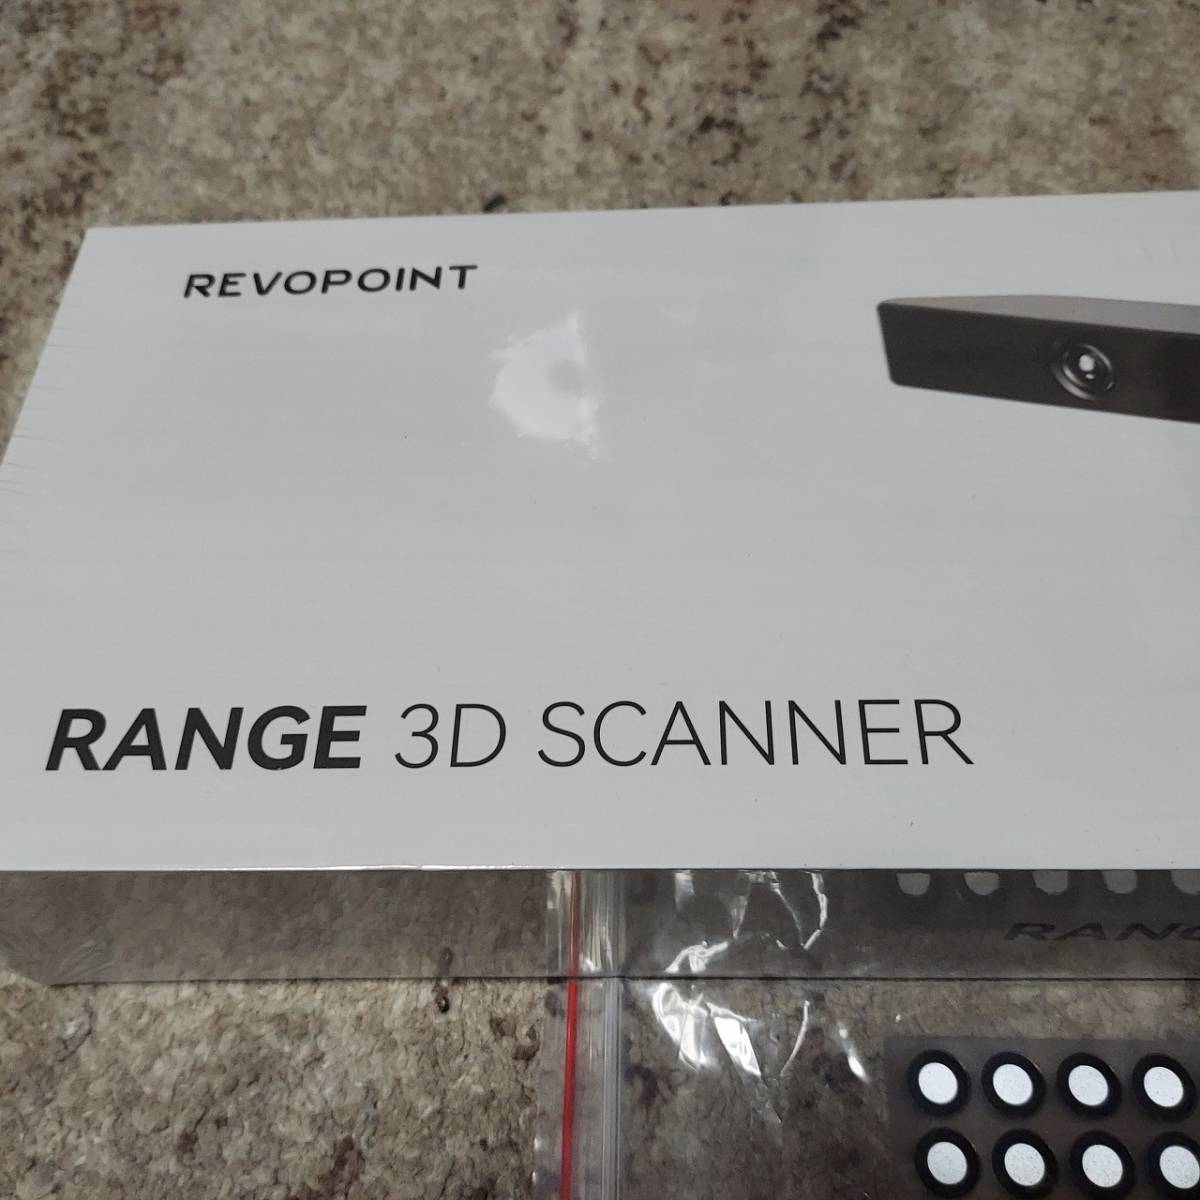  most new work Revopoint RANGE 3D scanner - hand scanner resolution 0.3mm high coloring 12-18FPS super light weight RANGE standard set 